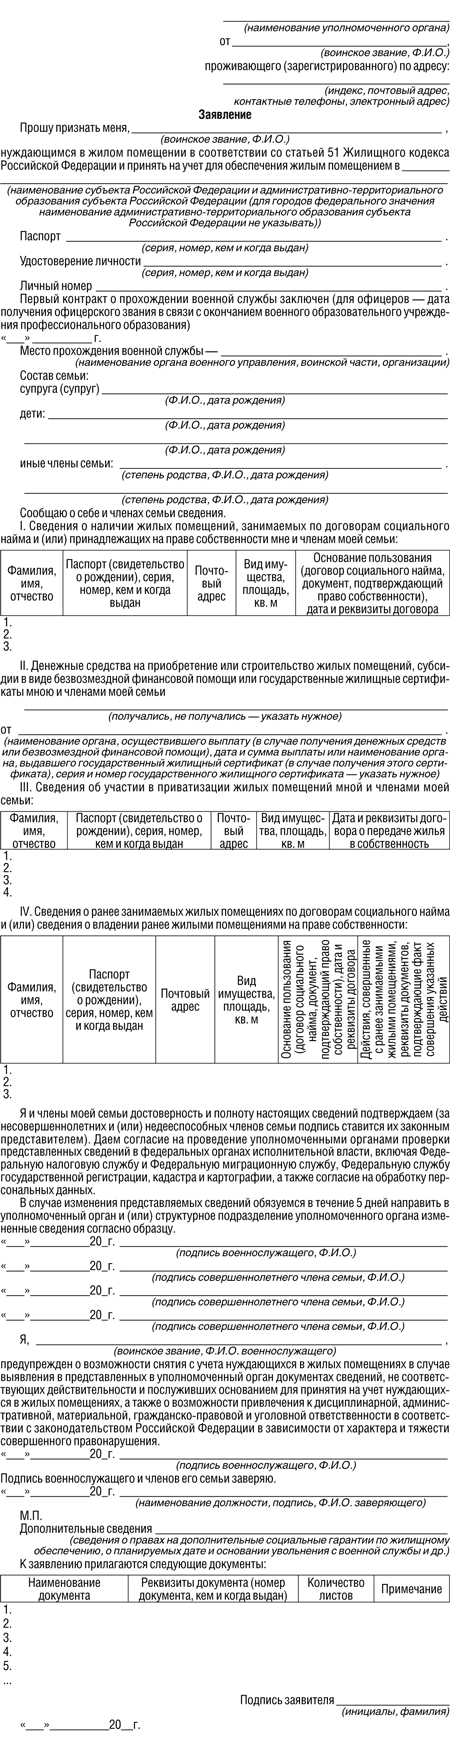 Приложение 1 к Правилам Постановление Правительства Российской Федерации от 29 июня 2011 г. N 512